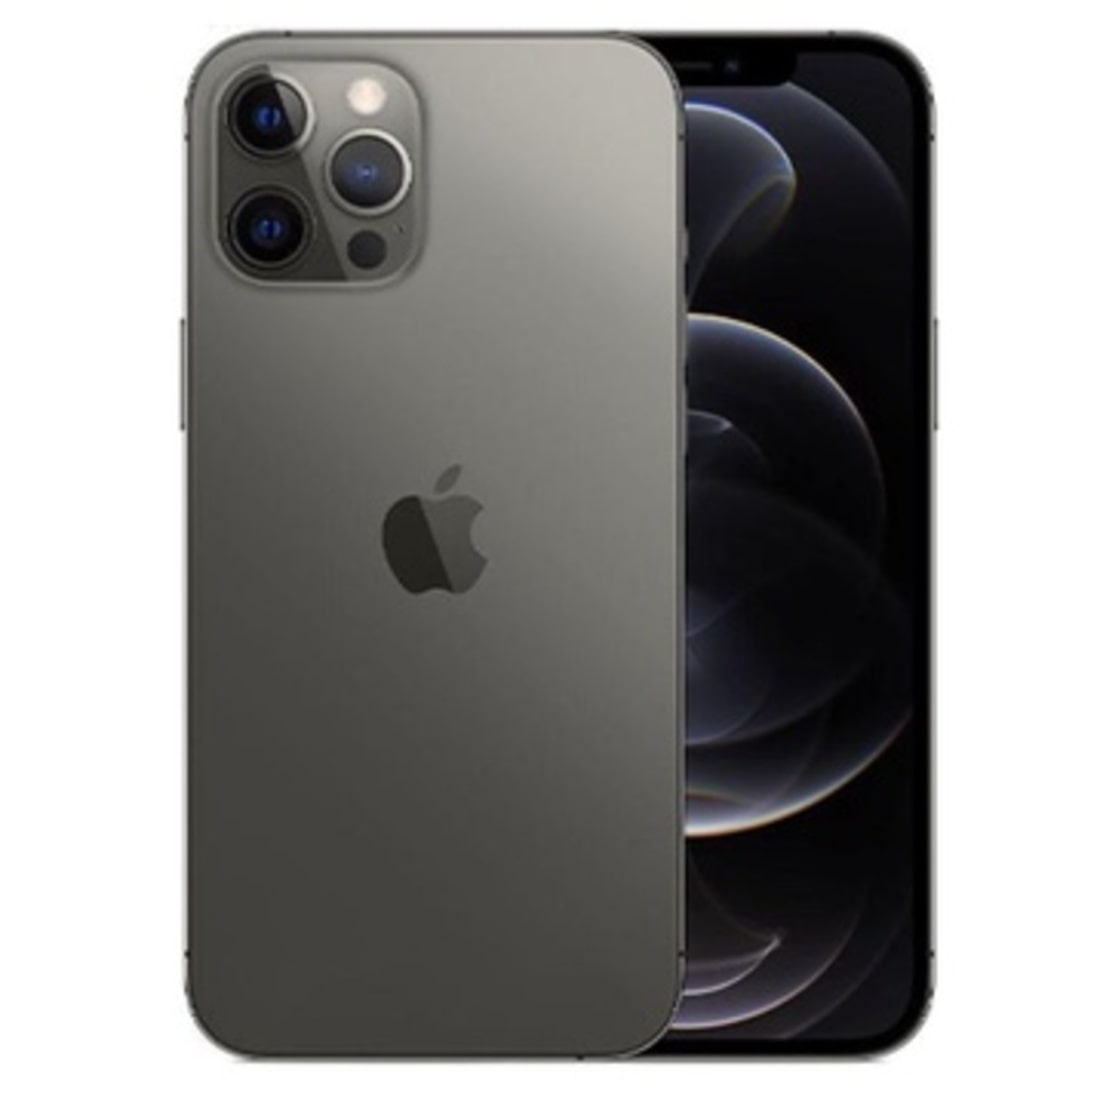 iPhone 12 Pro Max màu Graphite Black – màu đen than chì lịch lãm